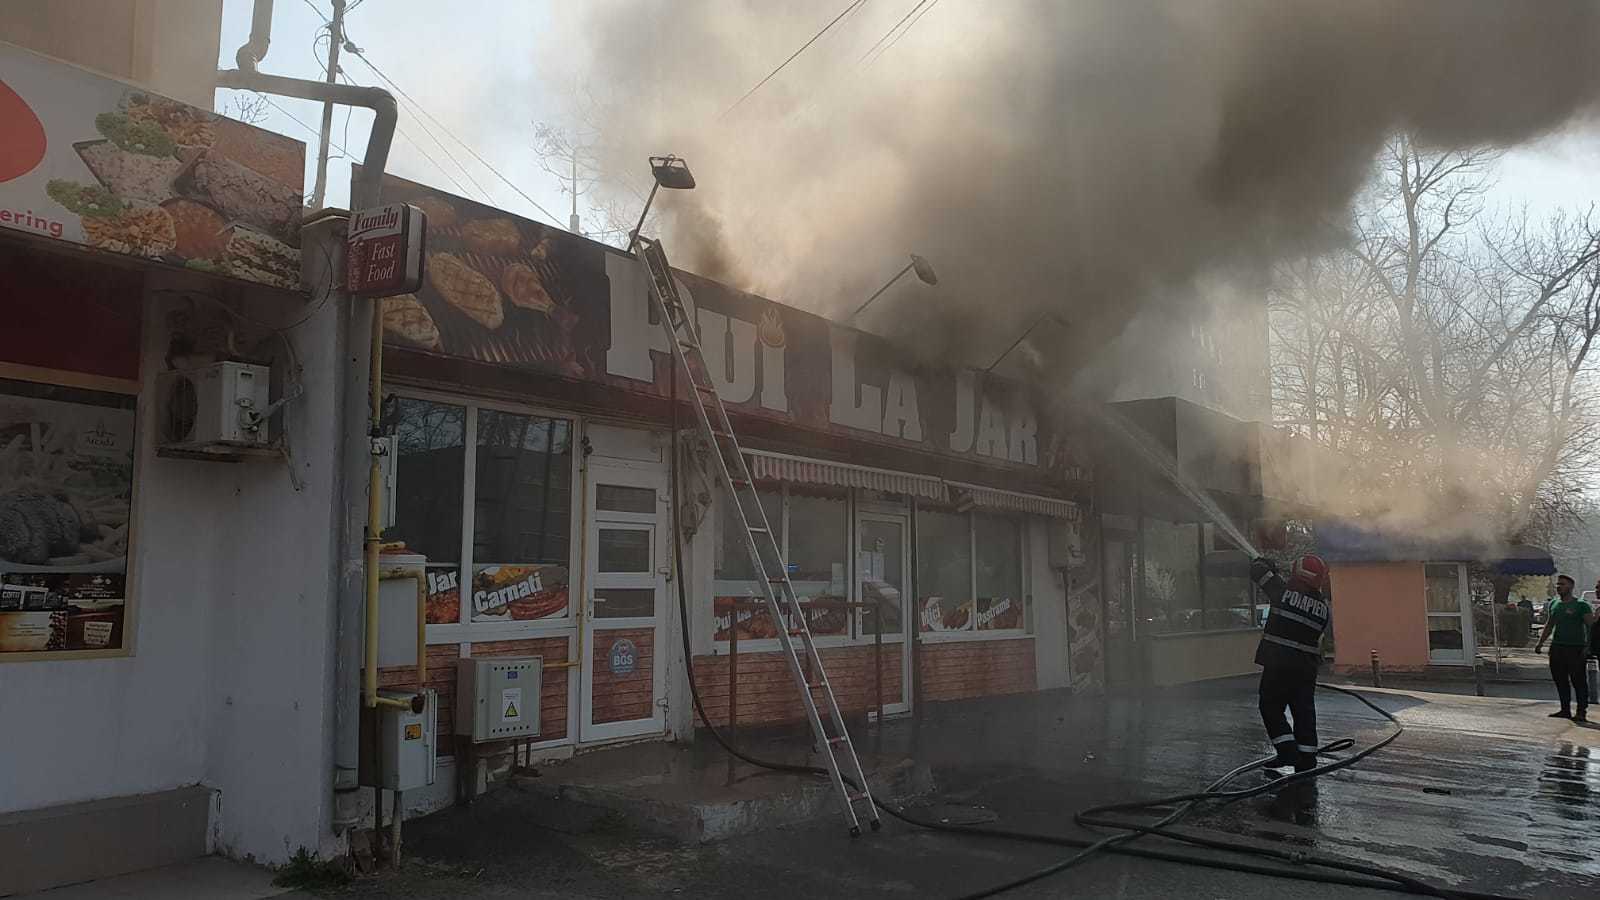 Incendiu la un fast-food din Galați. Focul a pornit de la grătarul din interior - Imaginea 4